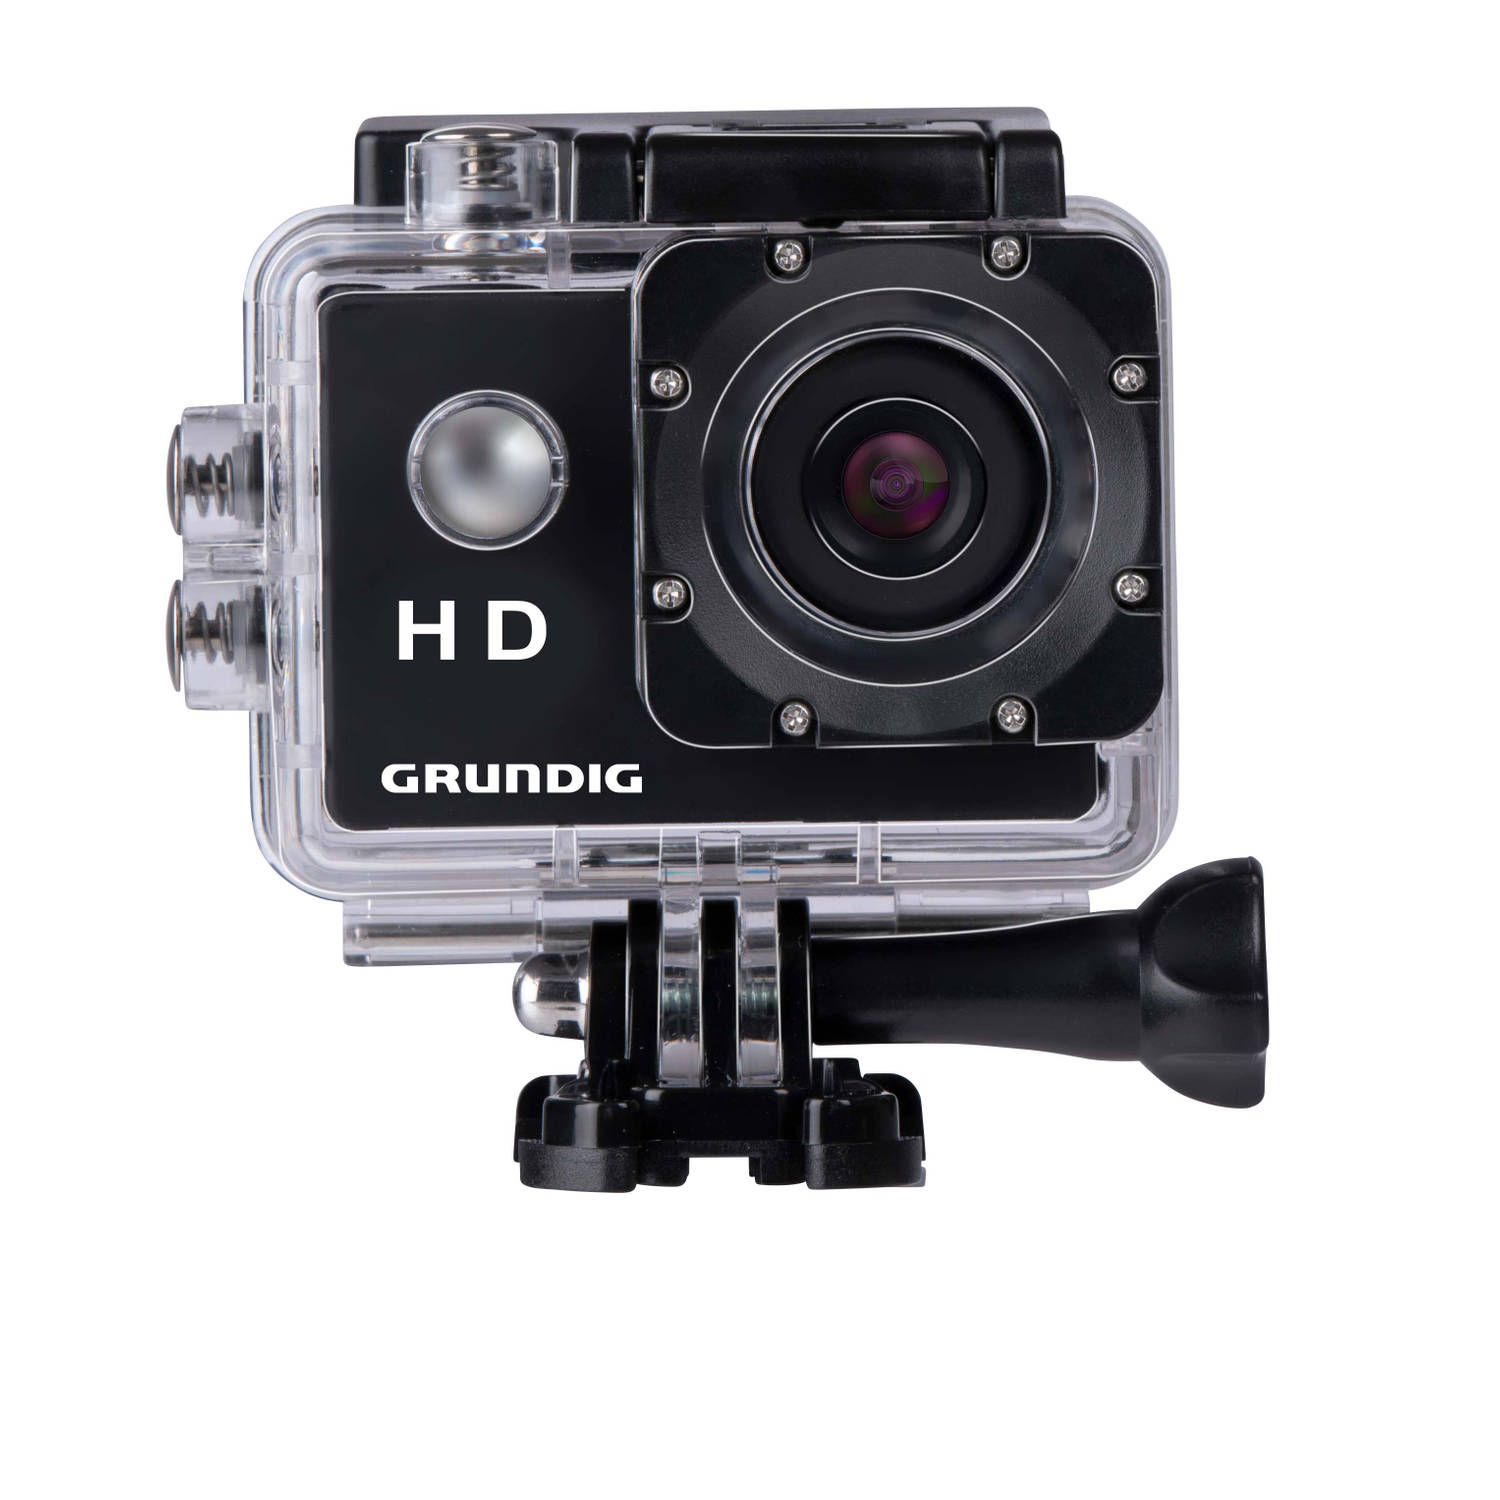 Grundig Action Camera Hd720p Onderwatercamera Waterdicht Tot 30m 2lcd Scherm Zwart